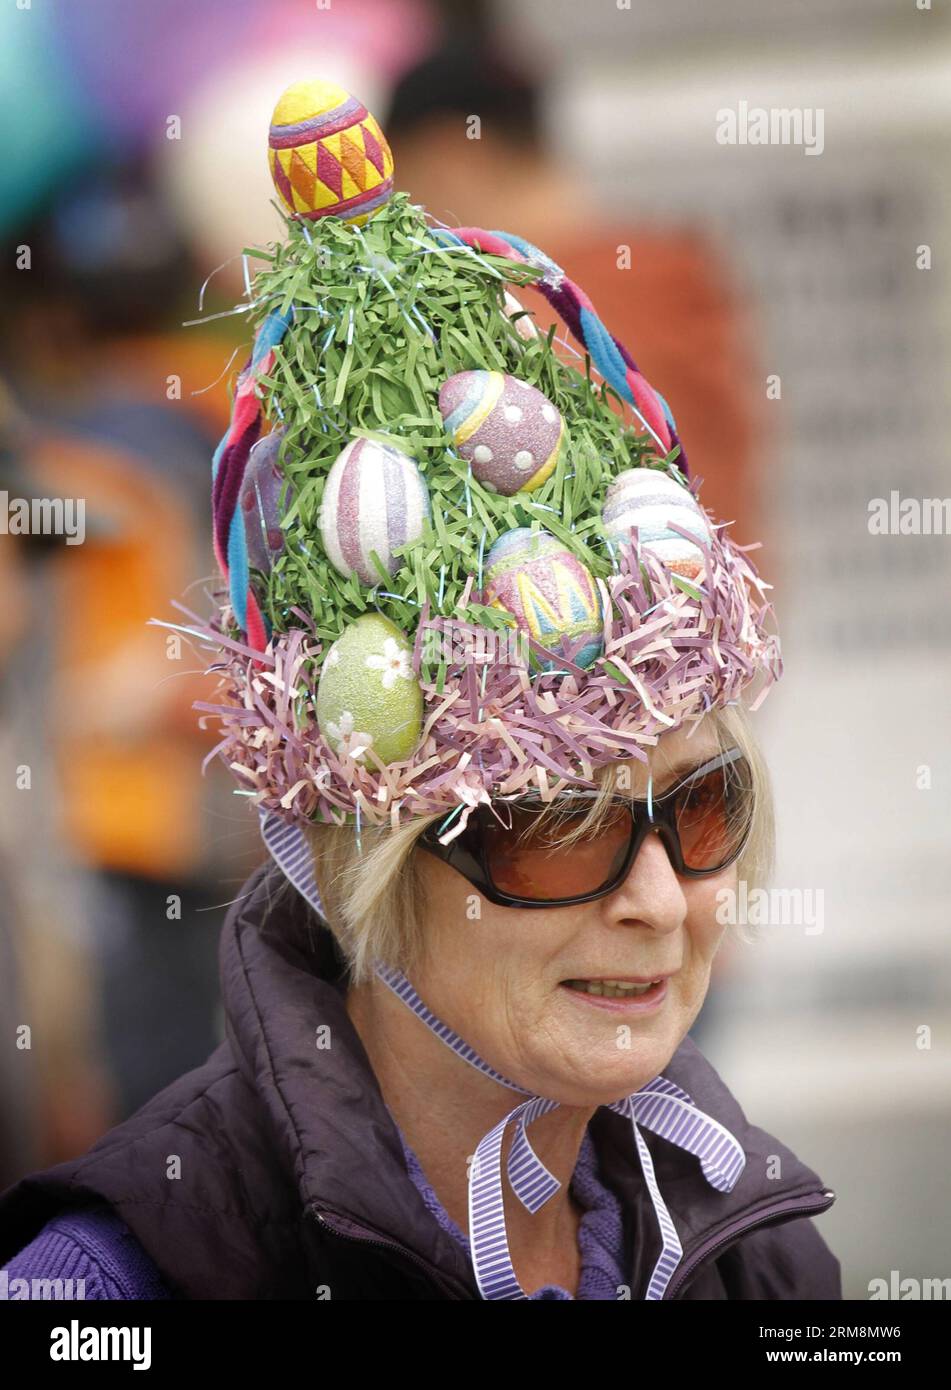 VANCOUVER, 20. April 2014 - Eine Bewohnerin nimmt an der Osterparade mit ihrem dekorierten Hut während der Osterveranstaltung in Delta, Kanada, am 20. April 2014 Teil. Die Menschen nehmen an der jährlichen Osterparade und der Eierjagd Teil, um Ostern im Delta zu feiern. (Xinhua/Liang Sen)(ctt) CANADA-VANCOUVER-EASTER PUBLICATIONxNOTxINxCHN Vancouver 20. April 2014 eine Bewohnerin schließt sich der Osterparade an, die während des Osterereignisses in Delta Canada am 20. April 2014 gefeiert wird Osterspaziergänge Stockfoto